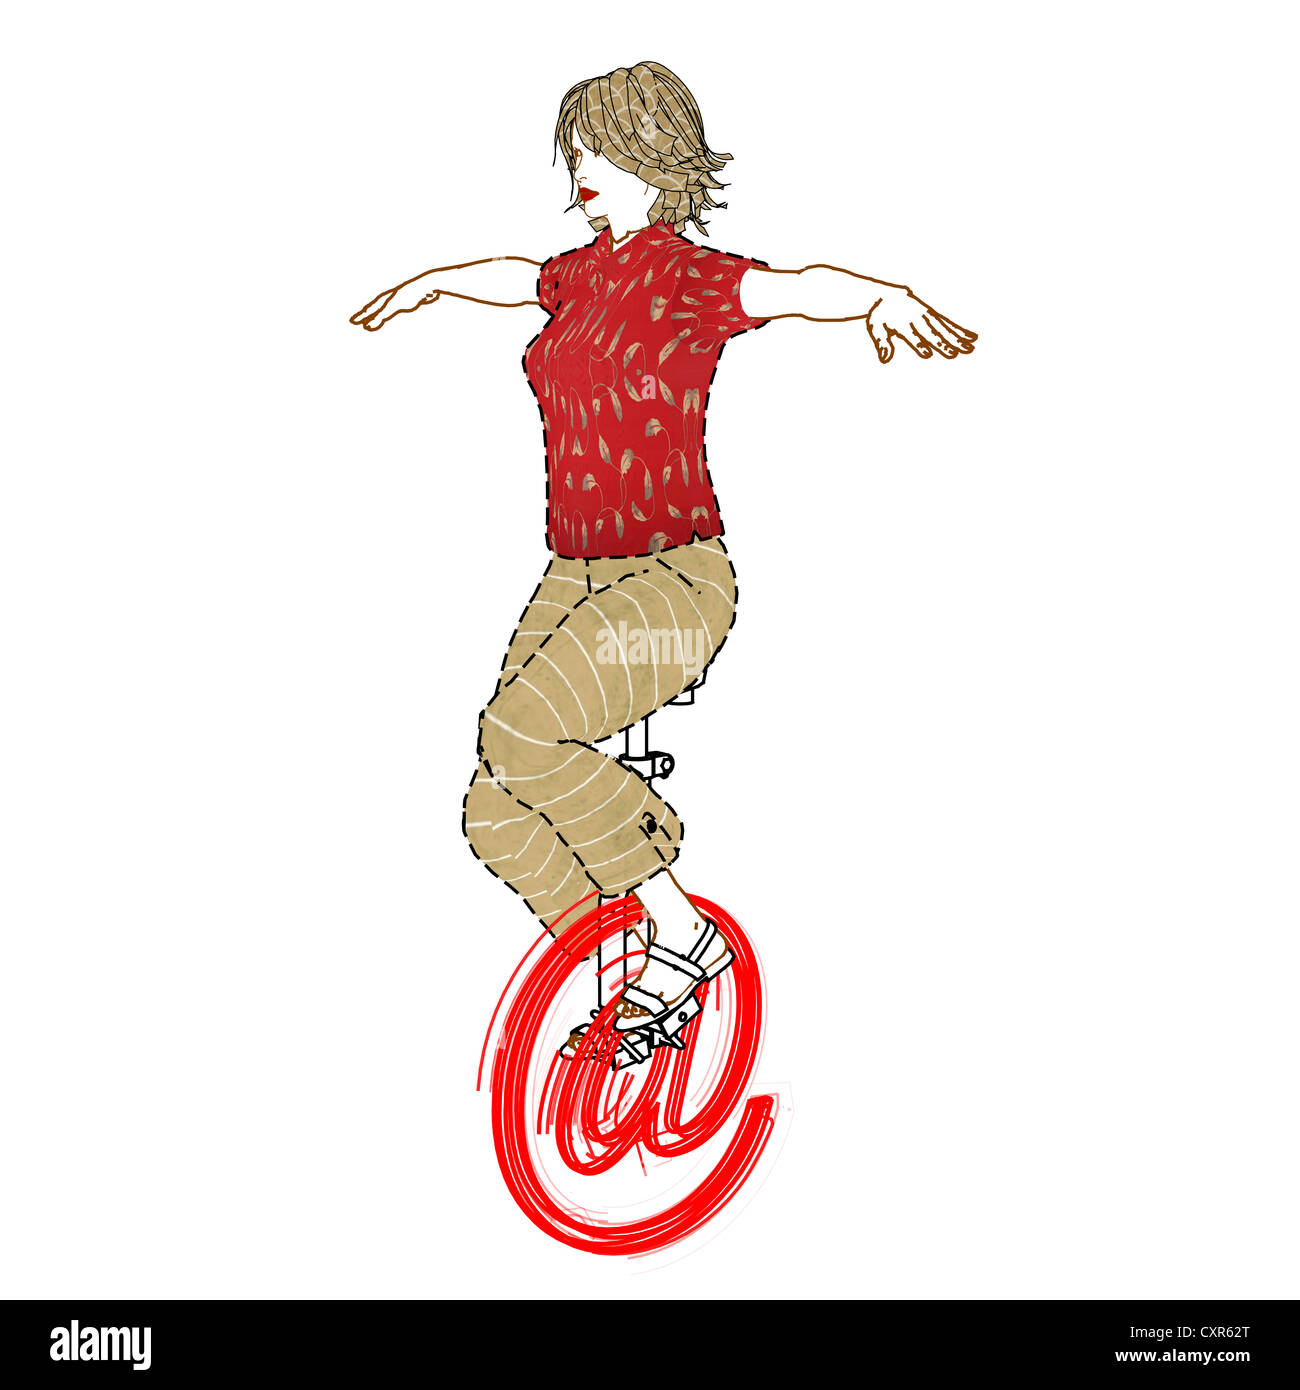 Vélo femme sur un symbole 'at' en l'utilisant comme un monocycle, image symbolique, surfer sur internet, illustration Banque D'Images